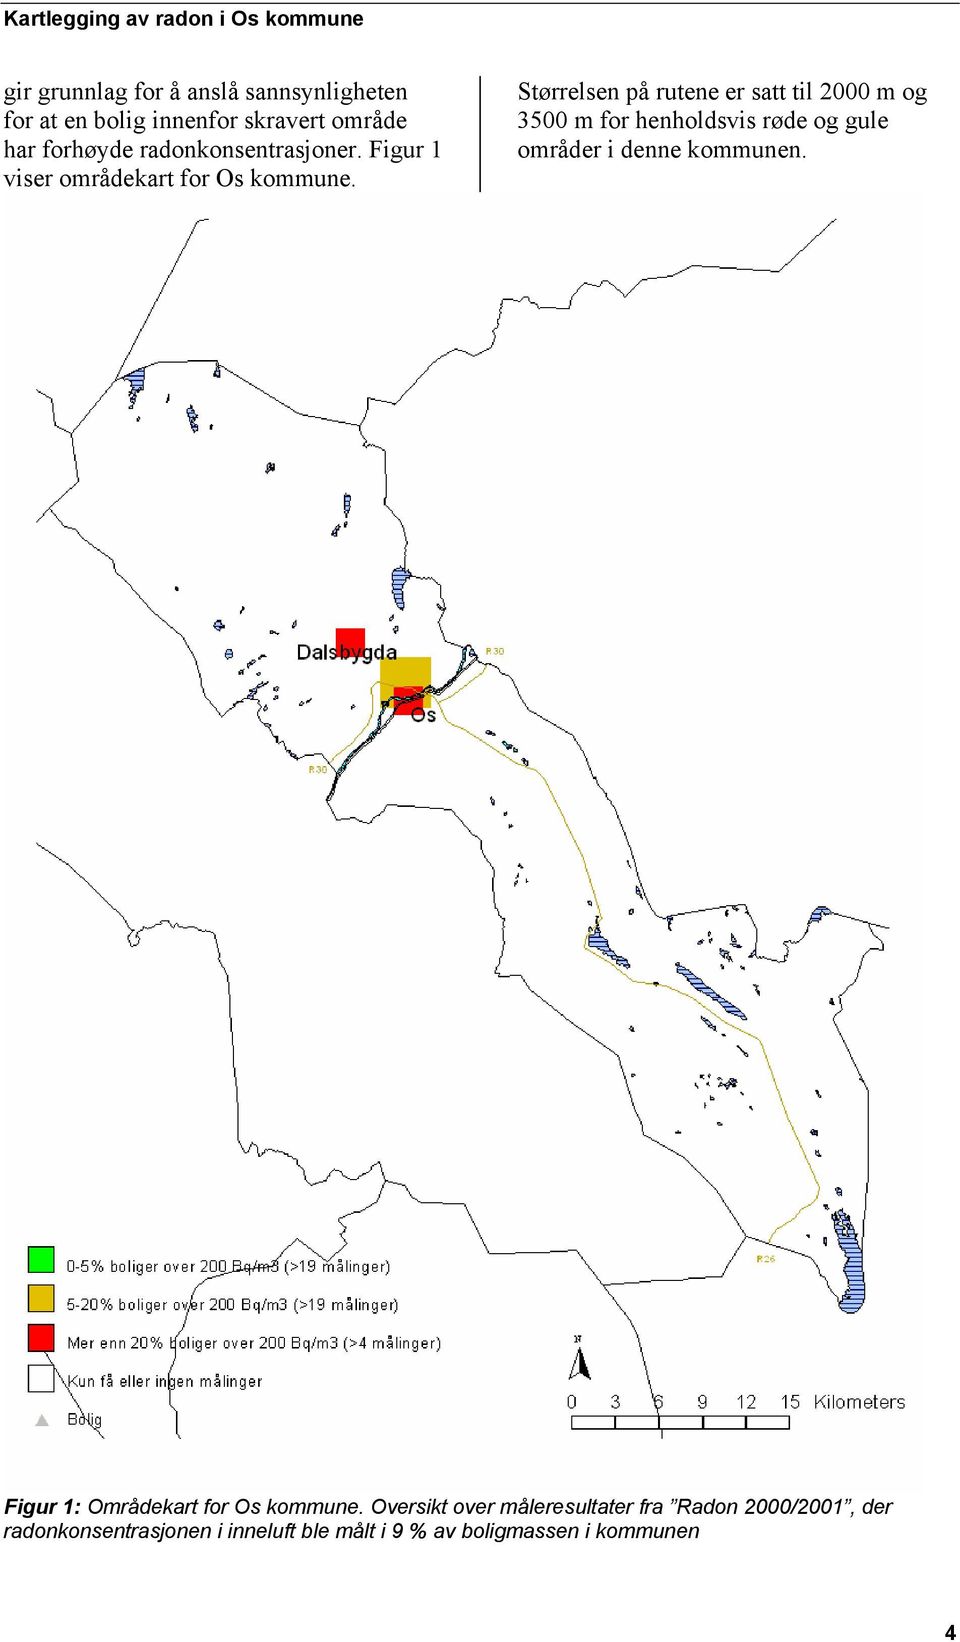 Størrelsen på rutene er satt til 2000 m og 3500 m for henholdsvis røde og gule områder i denne kommunen.